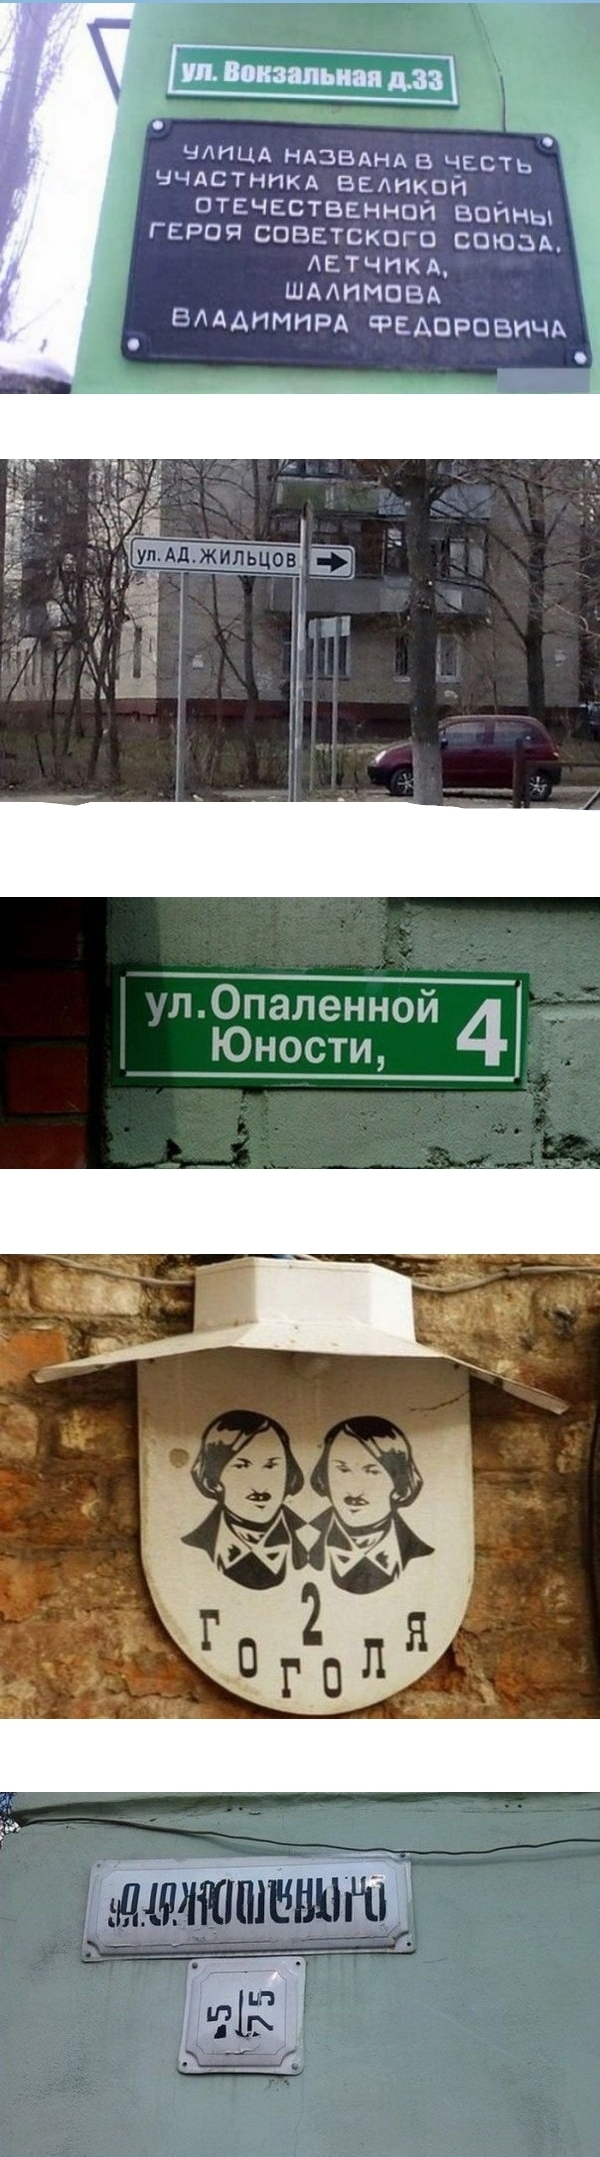 Забавные названия улиц